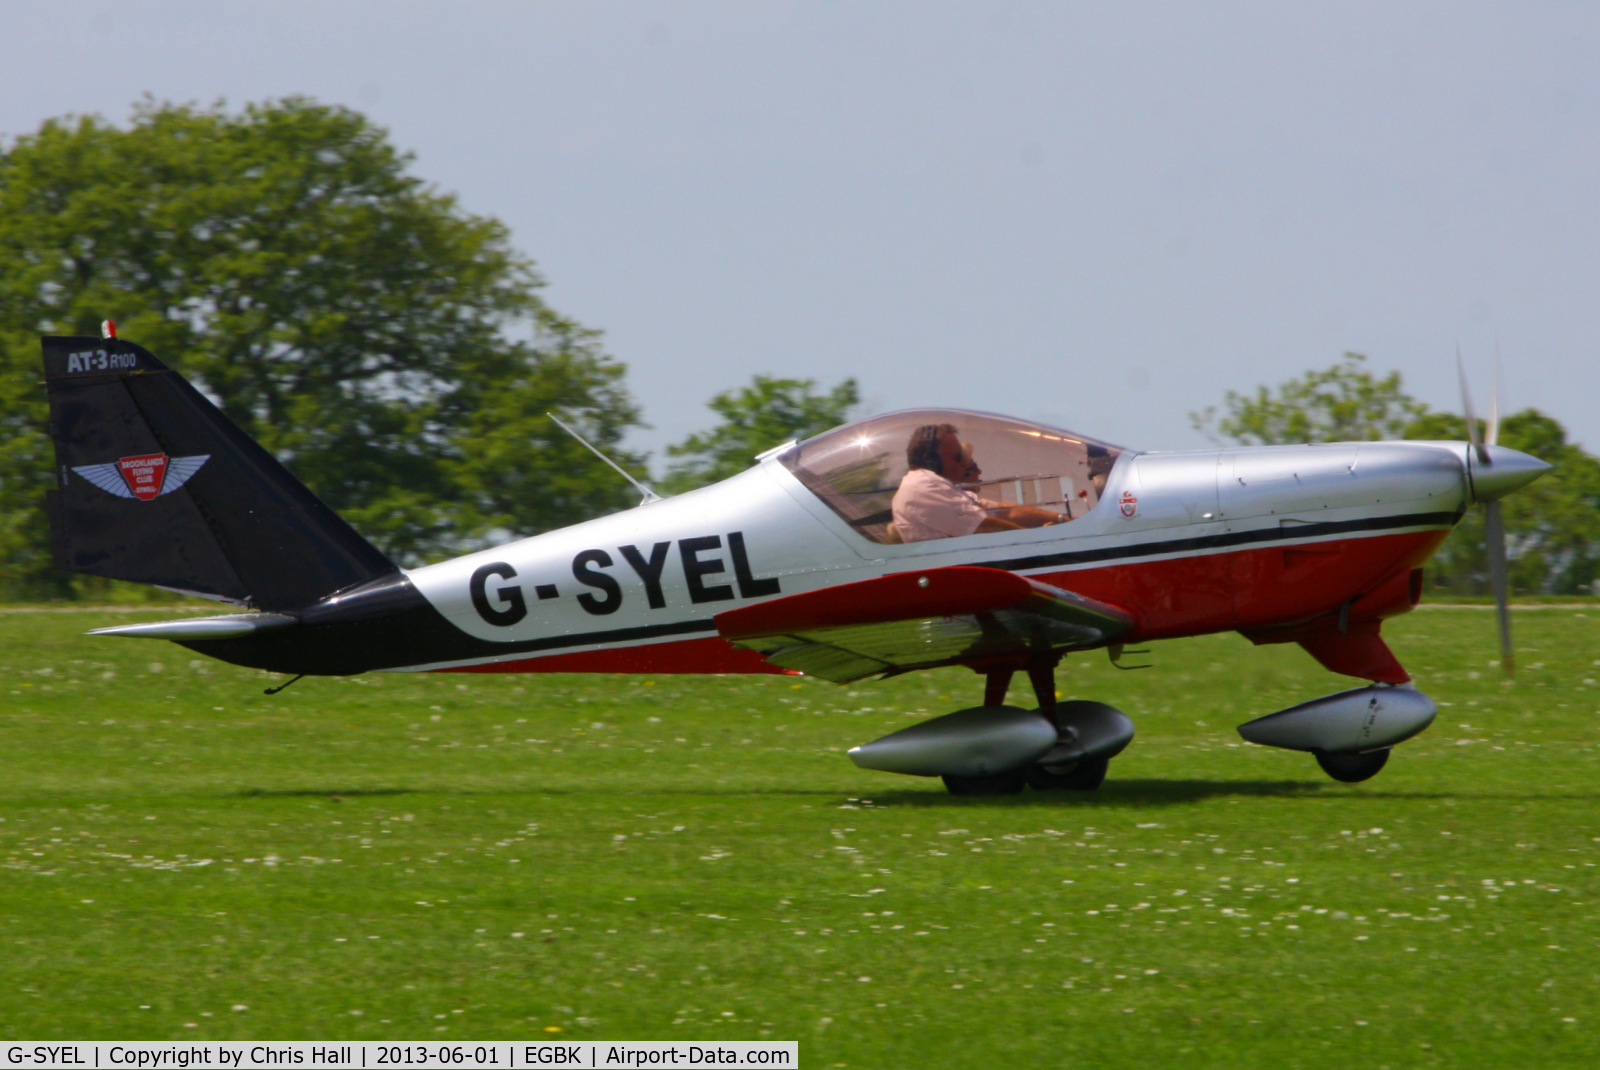 G-SYEL, 2006 Aero AT-3 R100 C/N AT3-019, at AeroExpo 2013